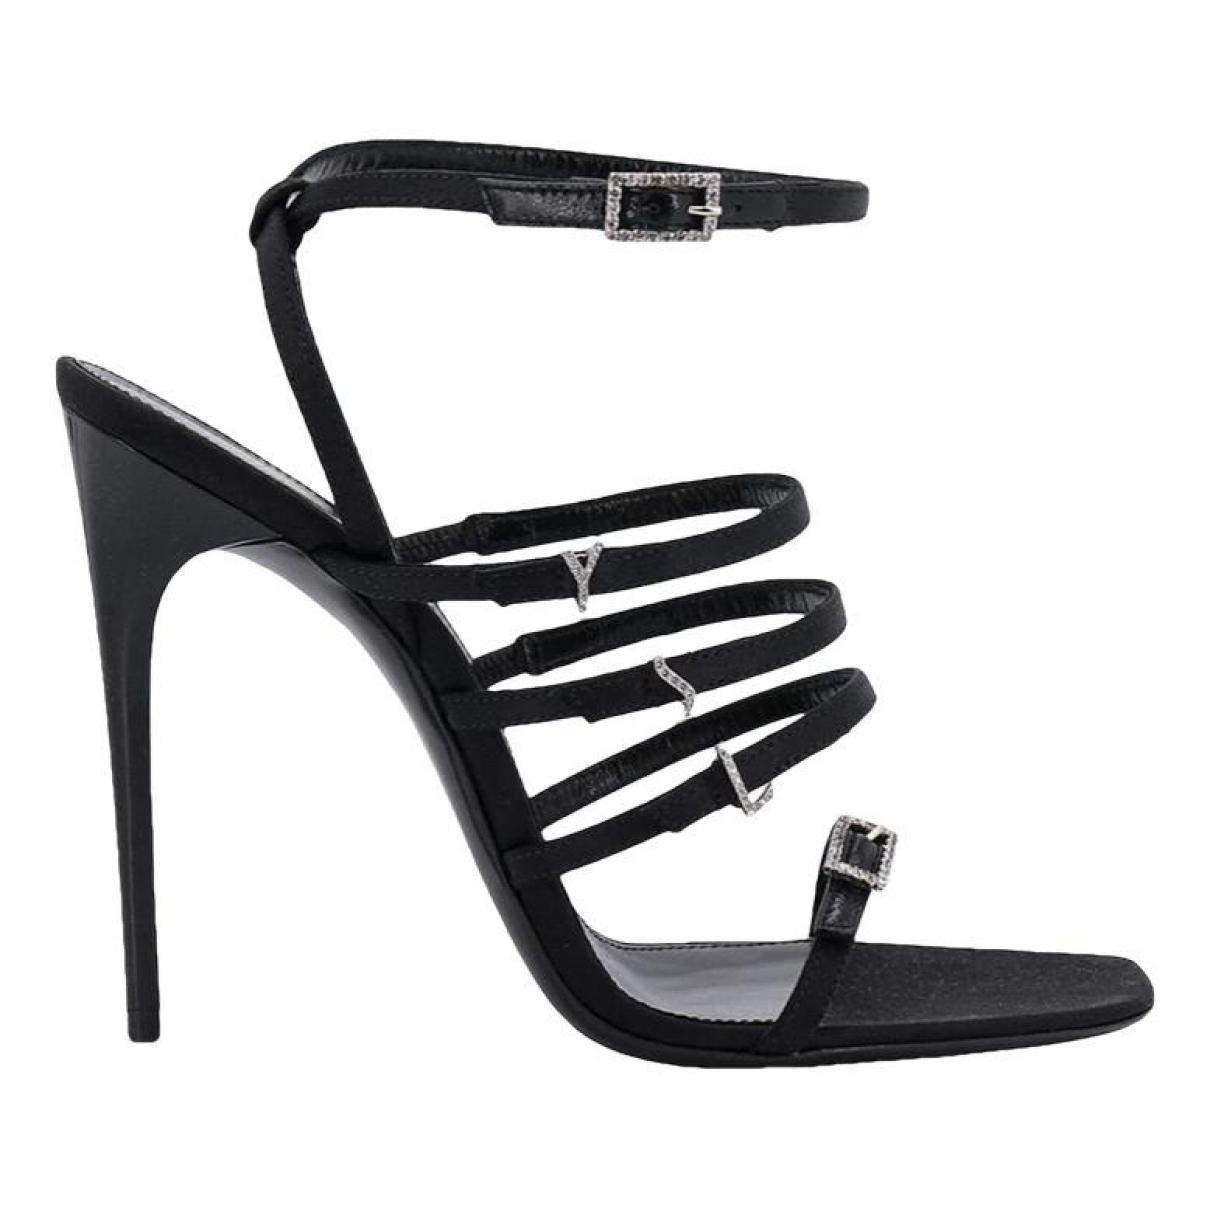 Leather heels - 1